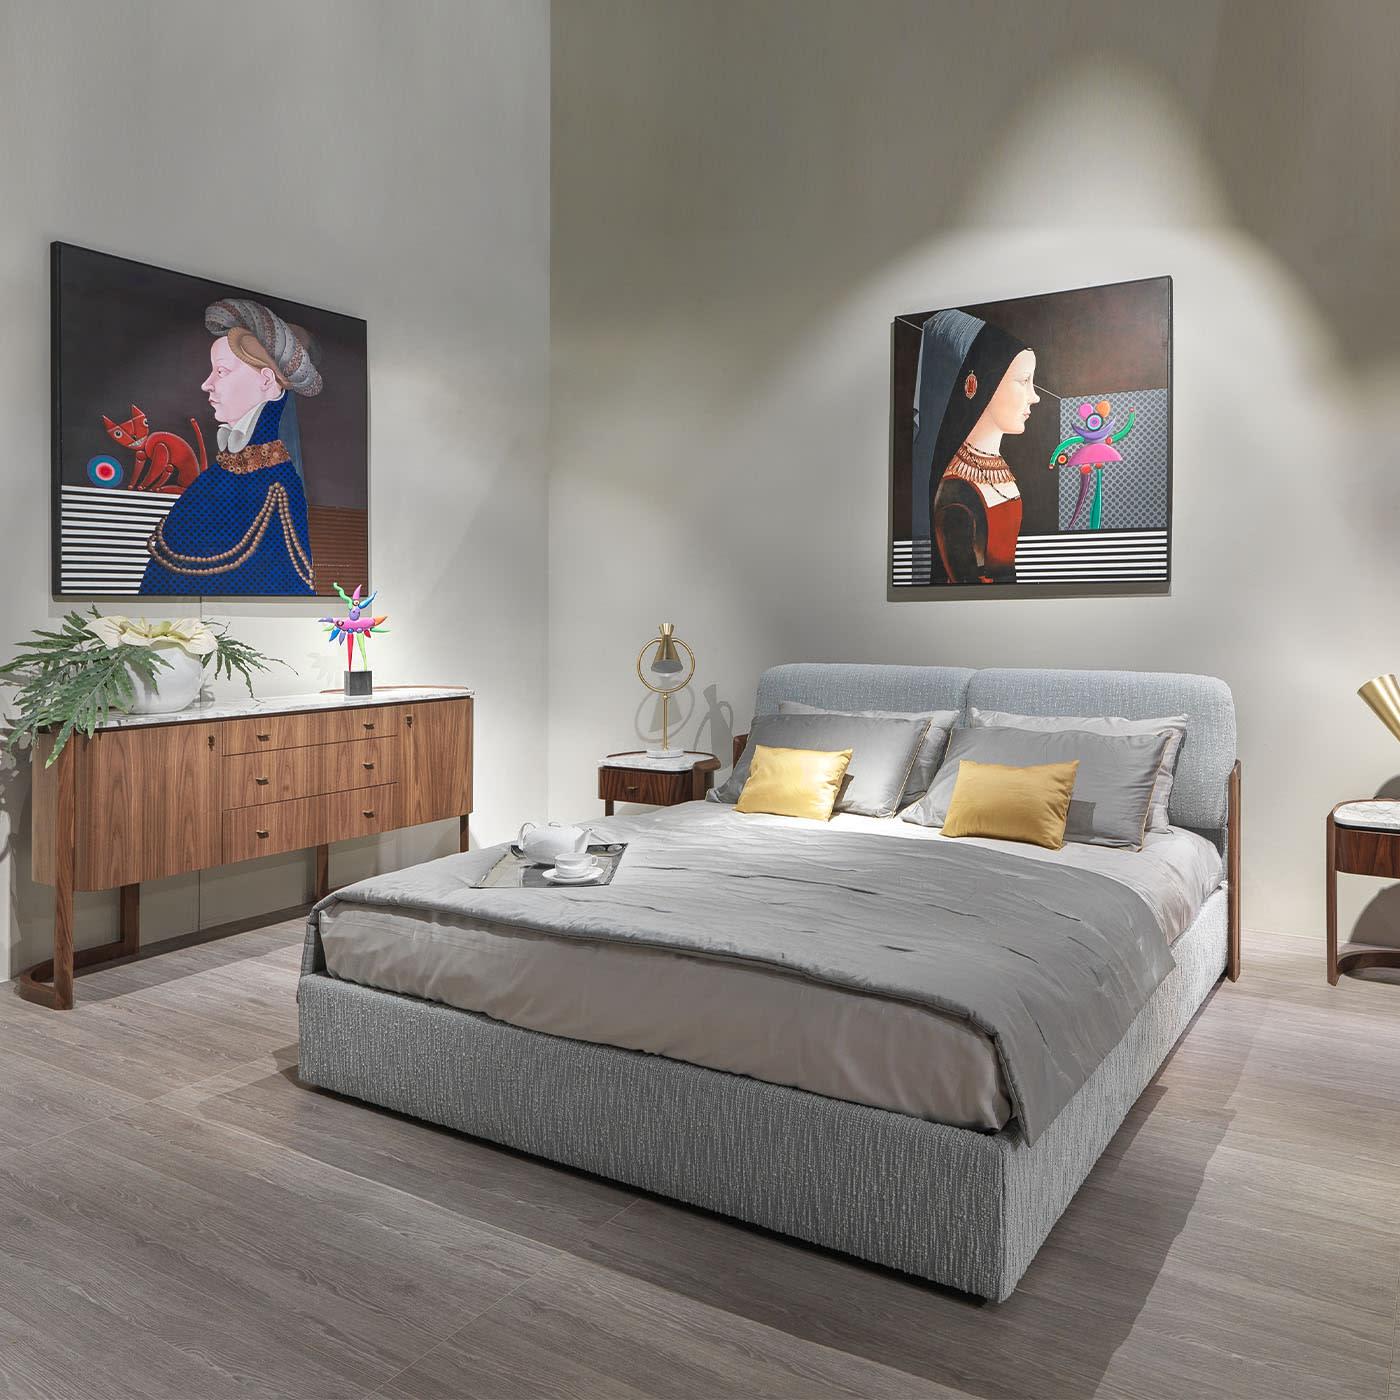 Dieses Canaletto-Doppelbett aus Nussbaum vereint Funktionalität und Eleganz in zeitloser Raffinesse. Das Stauraumdesign macht ihn zur perfekten Ergänzung für kompakte Schlafzimmer, während seine markante, mit Latten versehene und geschwungene